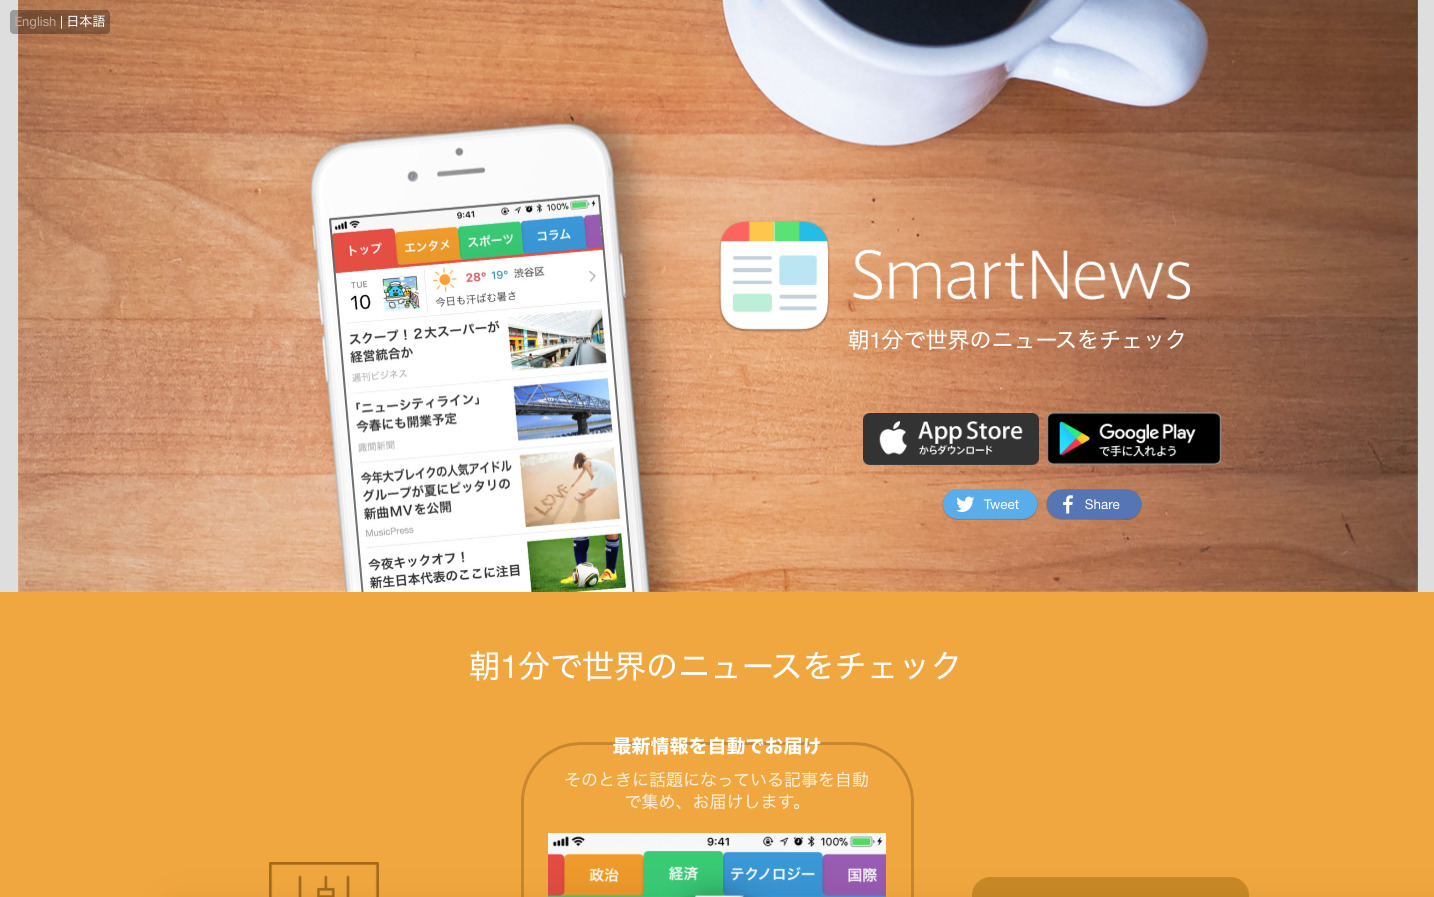 【スマートニュース】完全無料で気になるニュースがすぐに読める最強アプリ